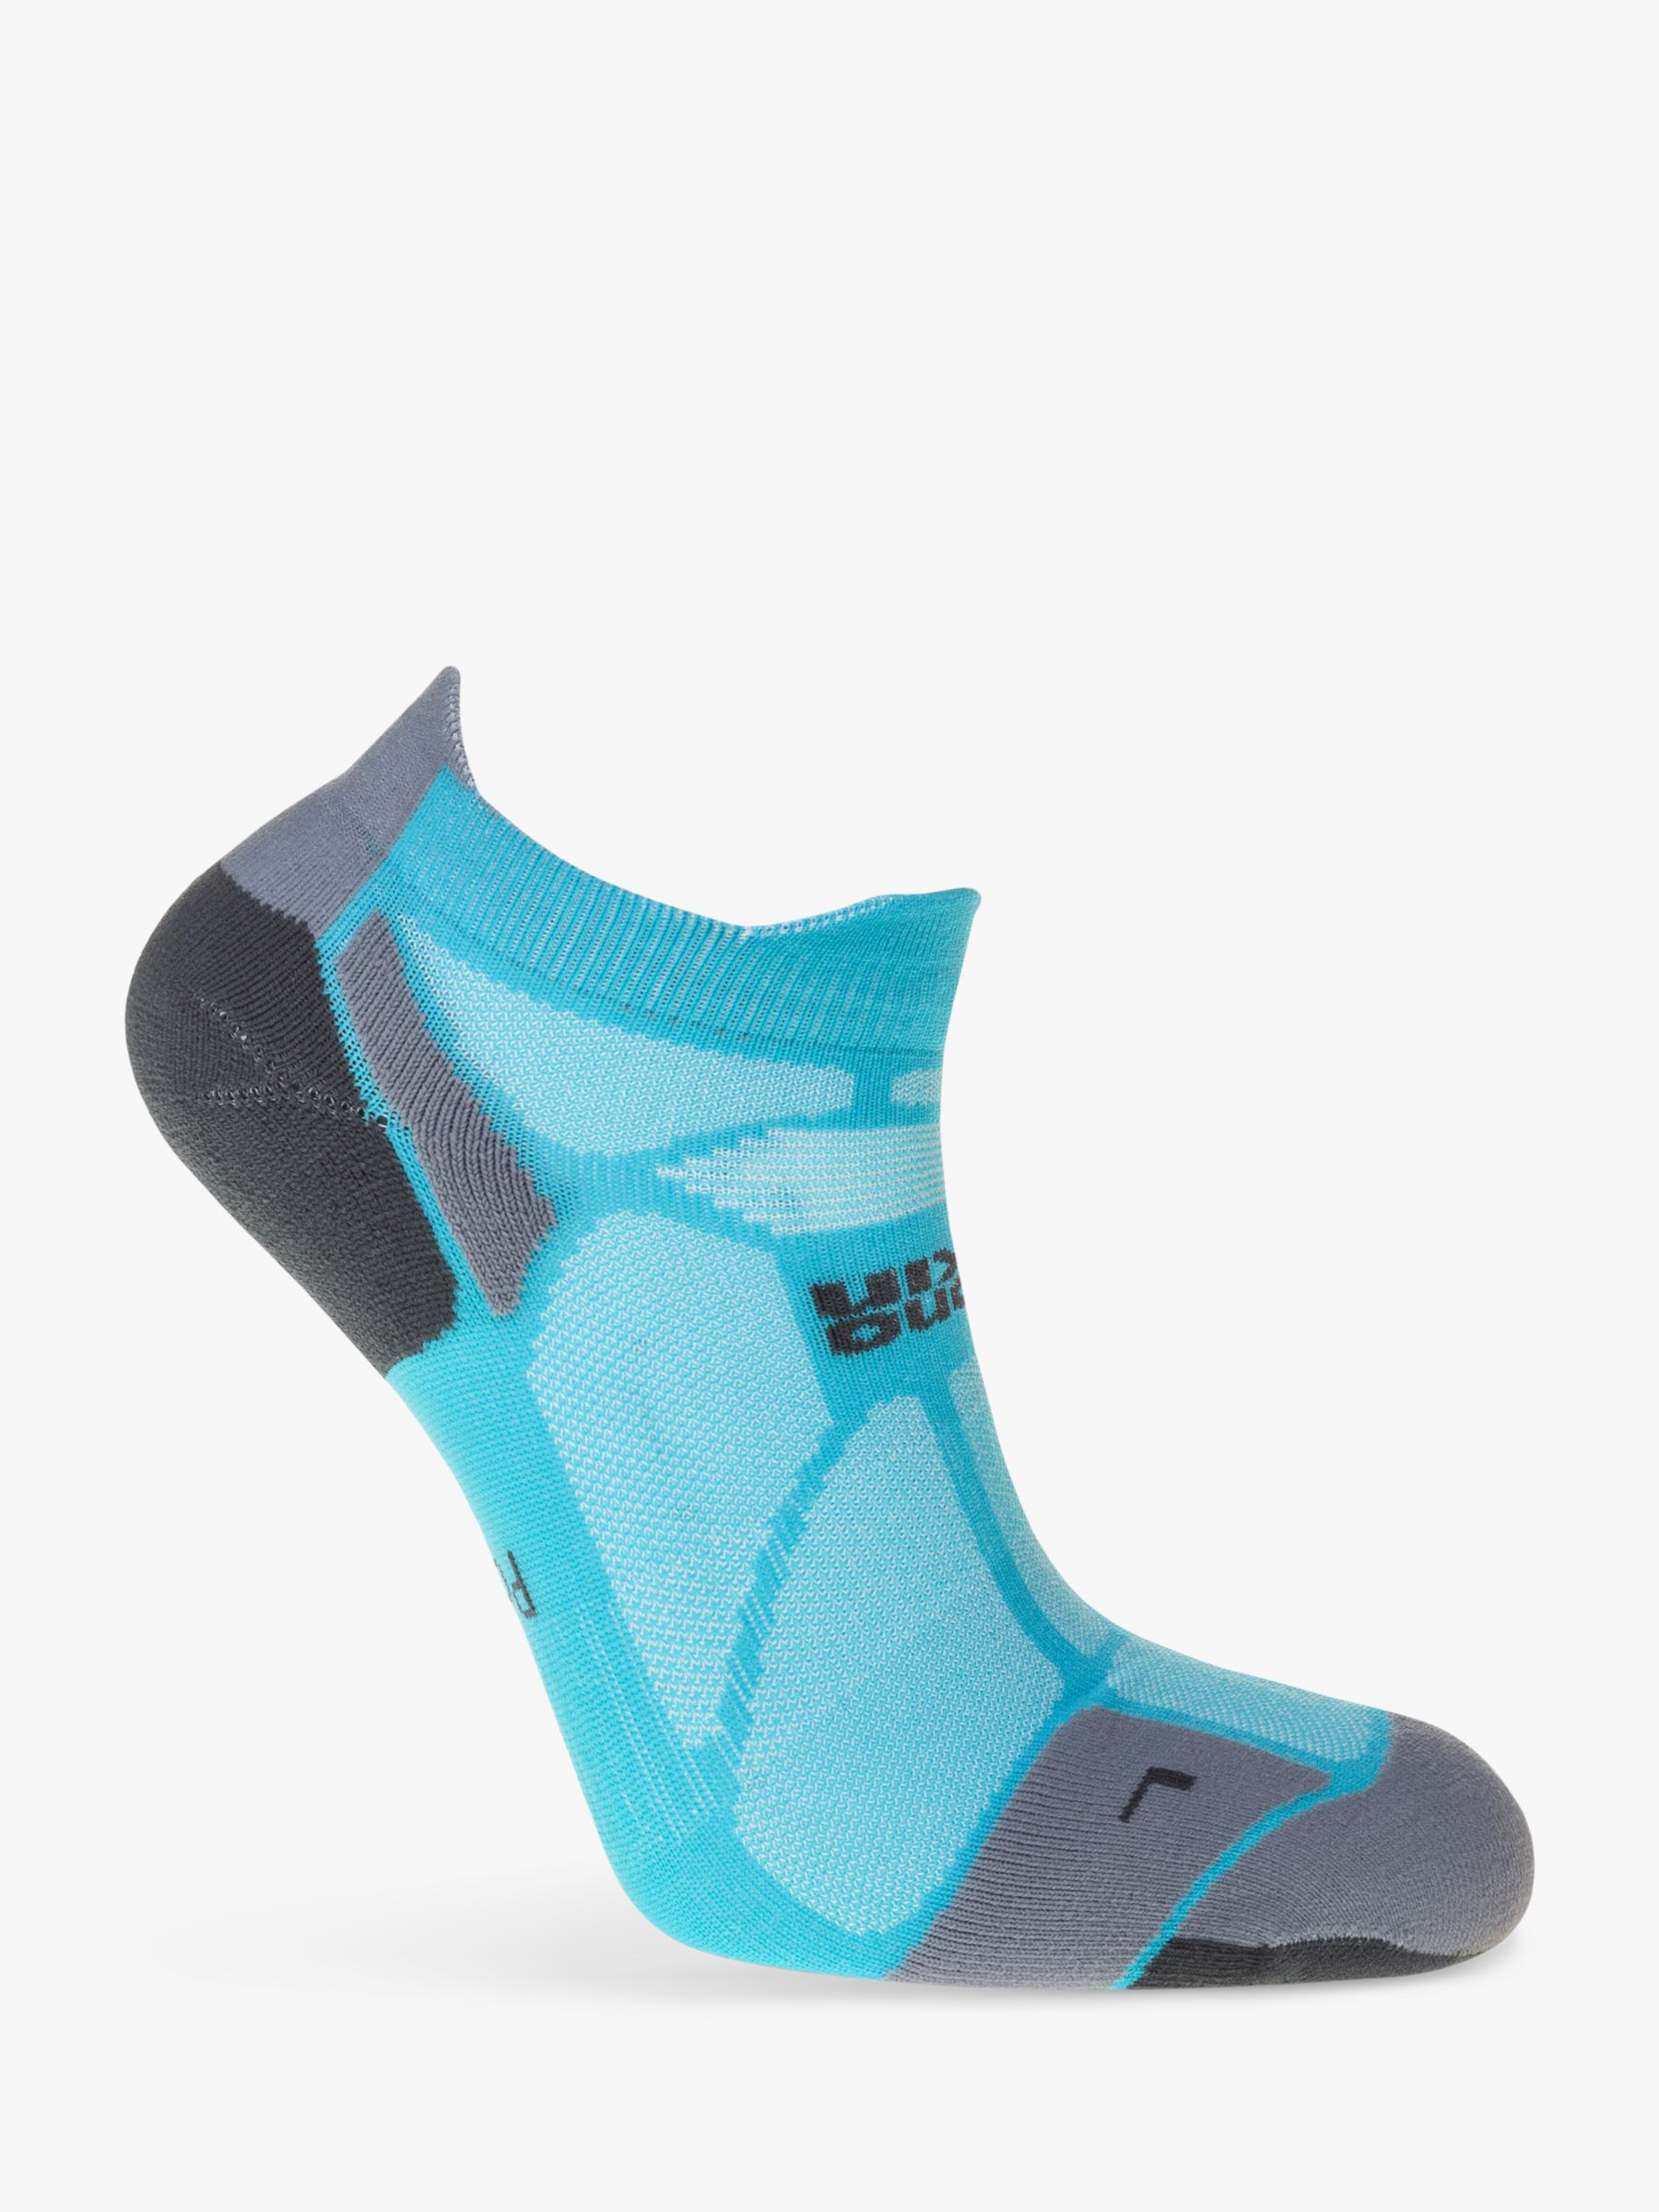 Hilly Marathon Fresh Ankle Running Socks, Blue, S